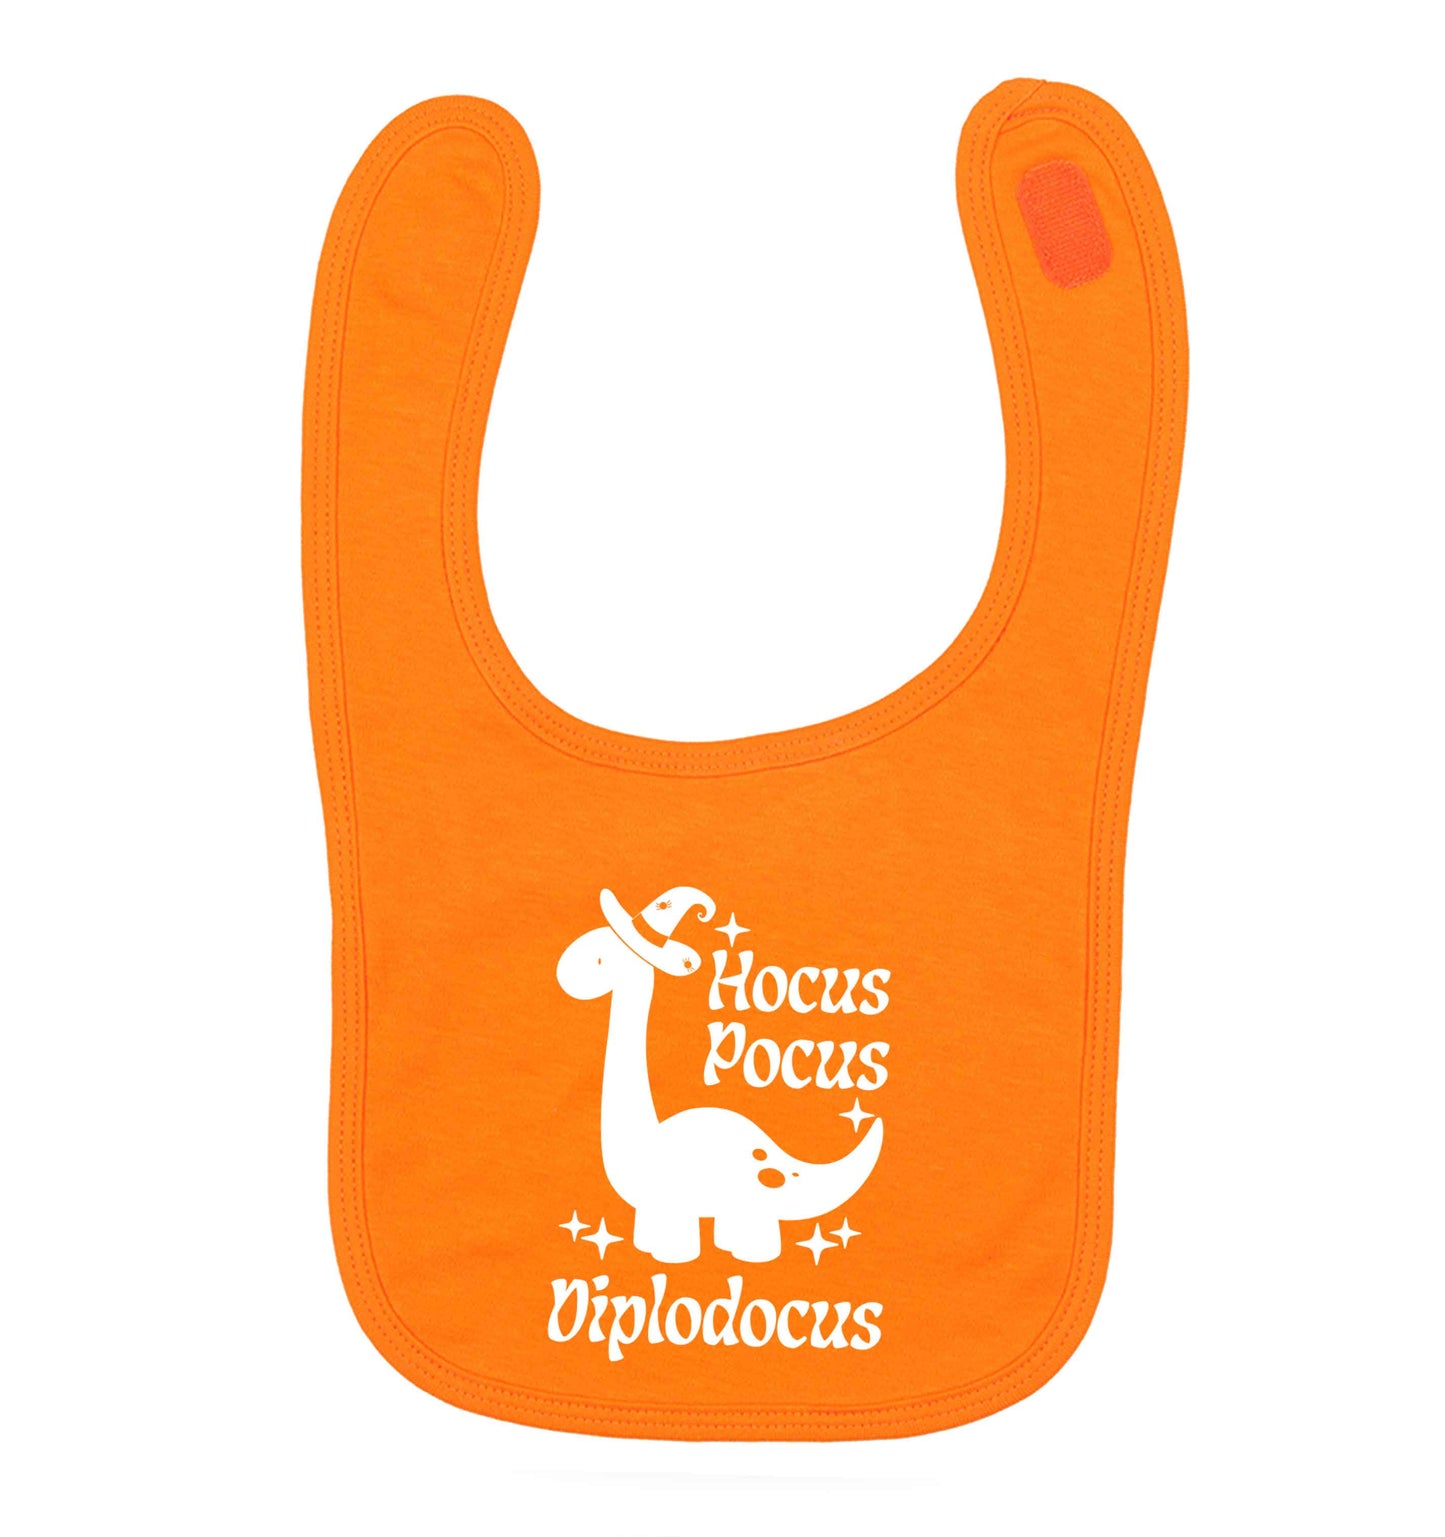 Hocus pocus diplodocus Kit orange baby bib